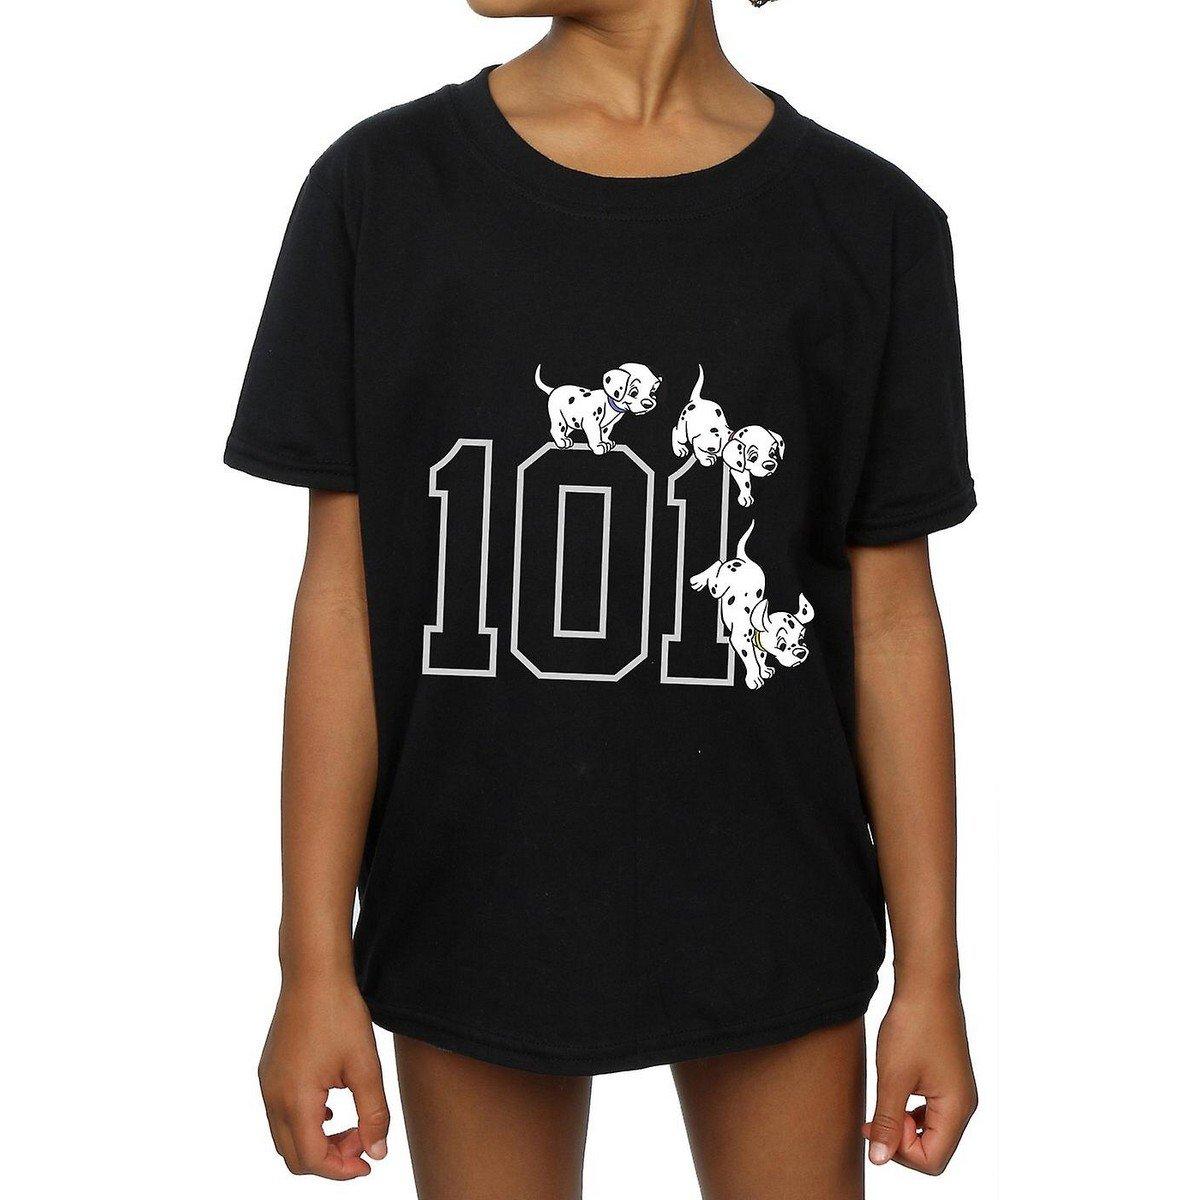 Tshirt Mädchen Schwarz 116 von 101 Dalmatians